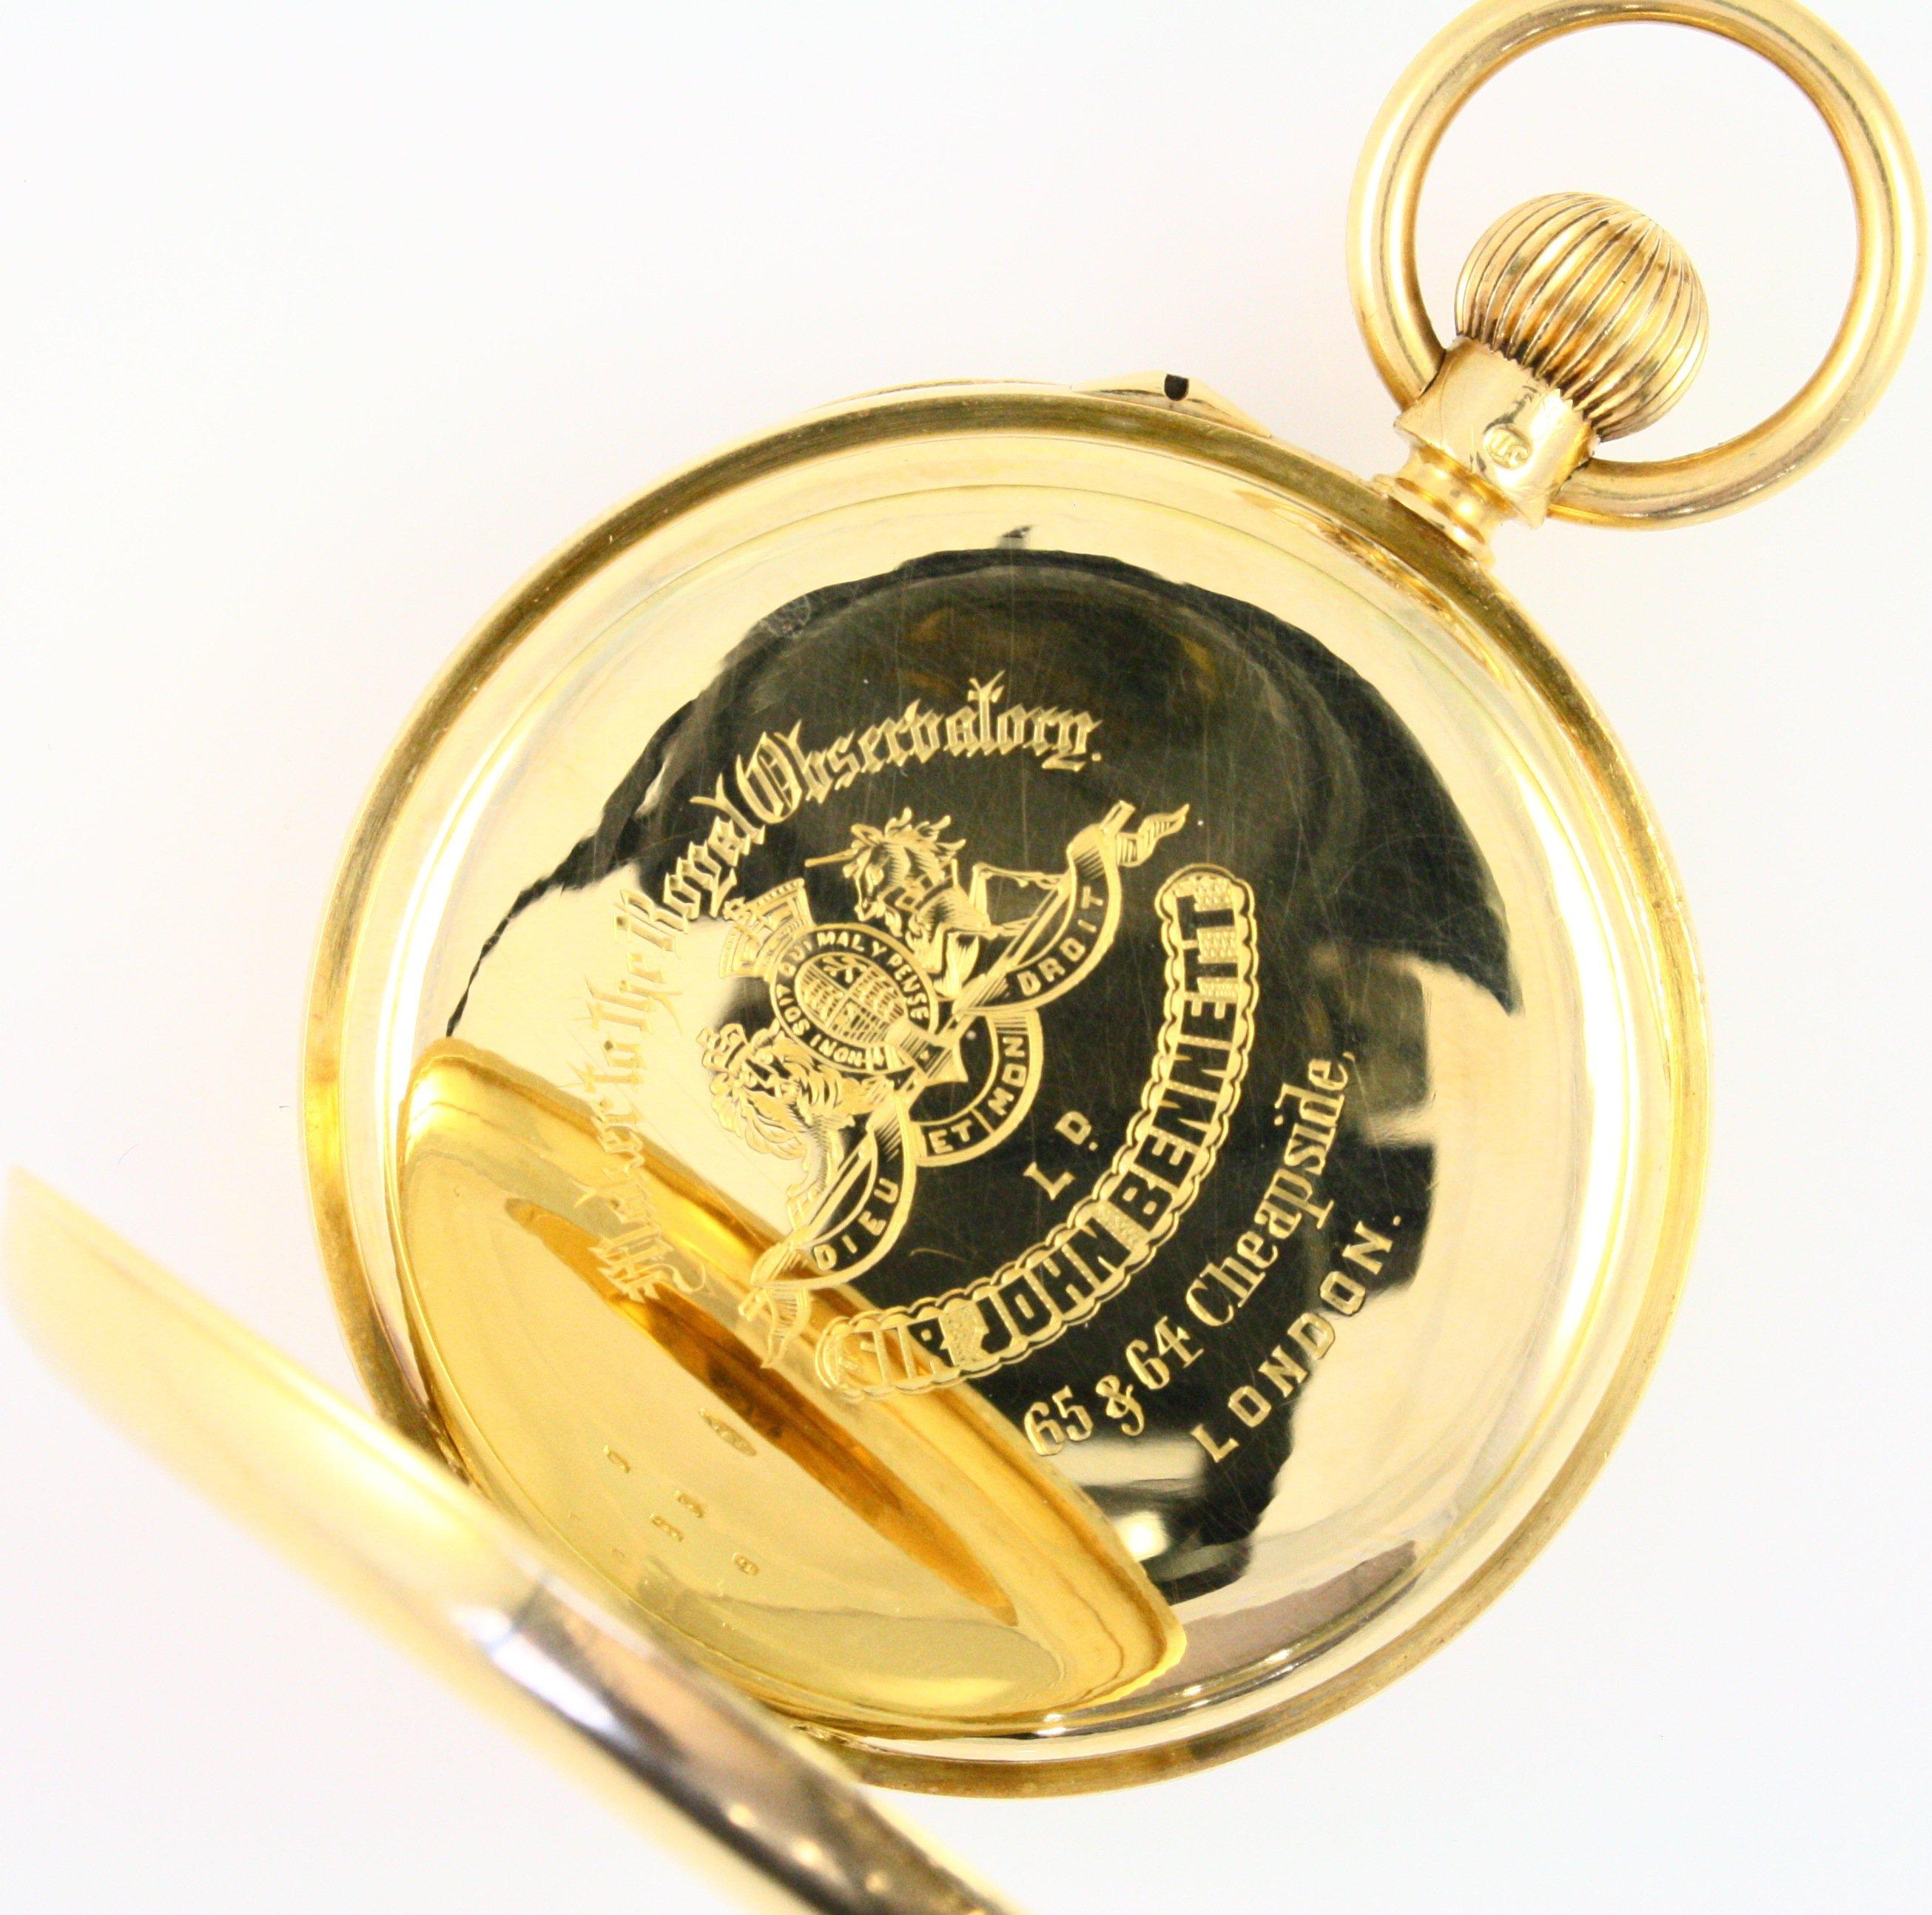 Circa 1880 Sir John Bennett Ltd. (London) pin-set open-face pocket watch